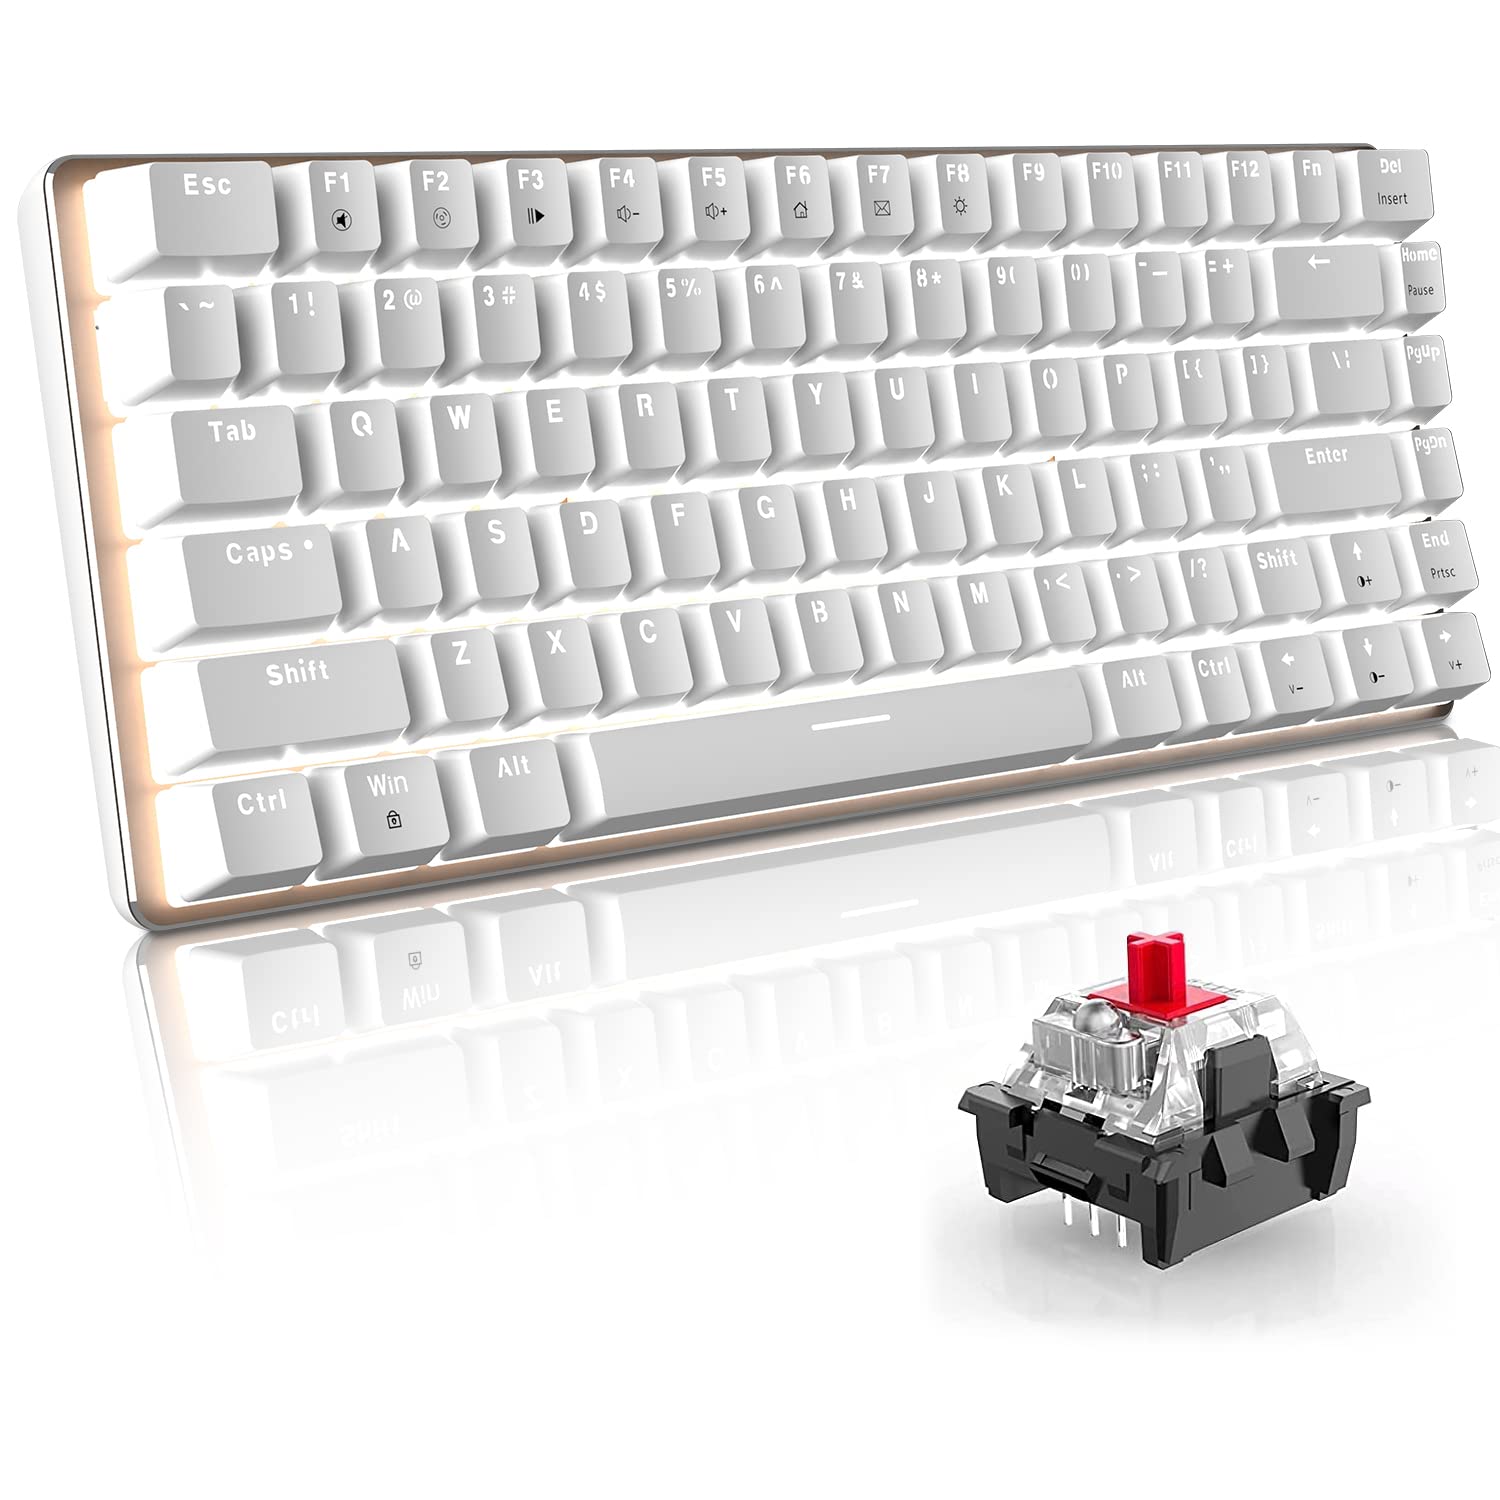 60% Mechanische Gaming-Tastatur Hot Swapable-Taste 82 Keys Kabelgebundene Typ-C Kompakte Tastatur mit weißem LED-Hintergrundbeleuchtung, ergonomisches Design für Gamer/Typisten (roter Schalter, weiß)